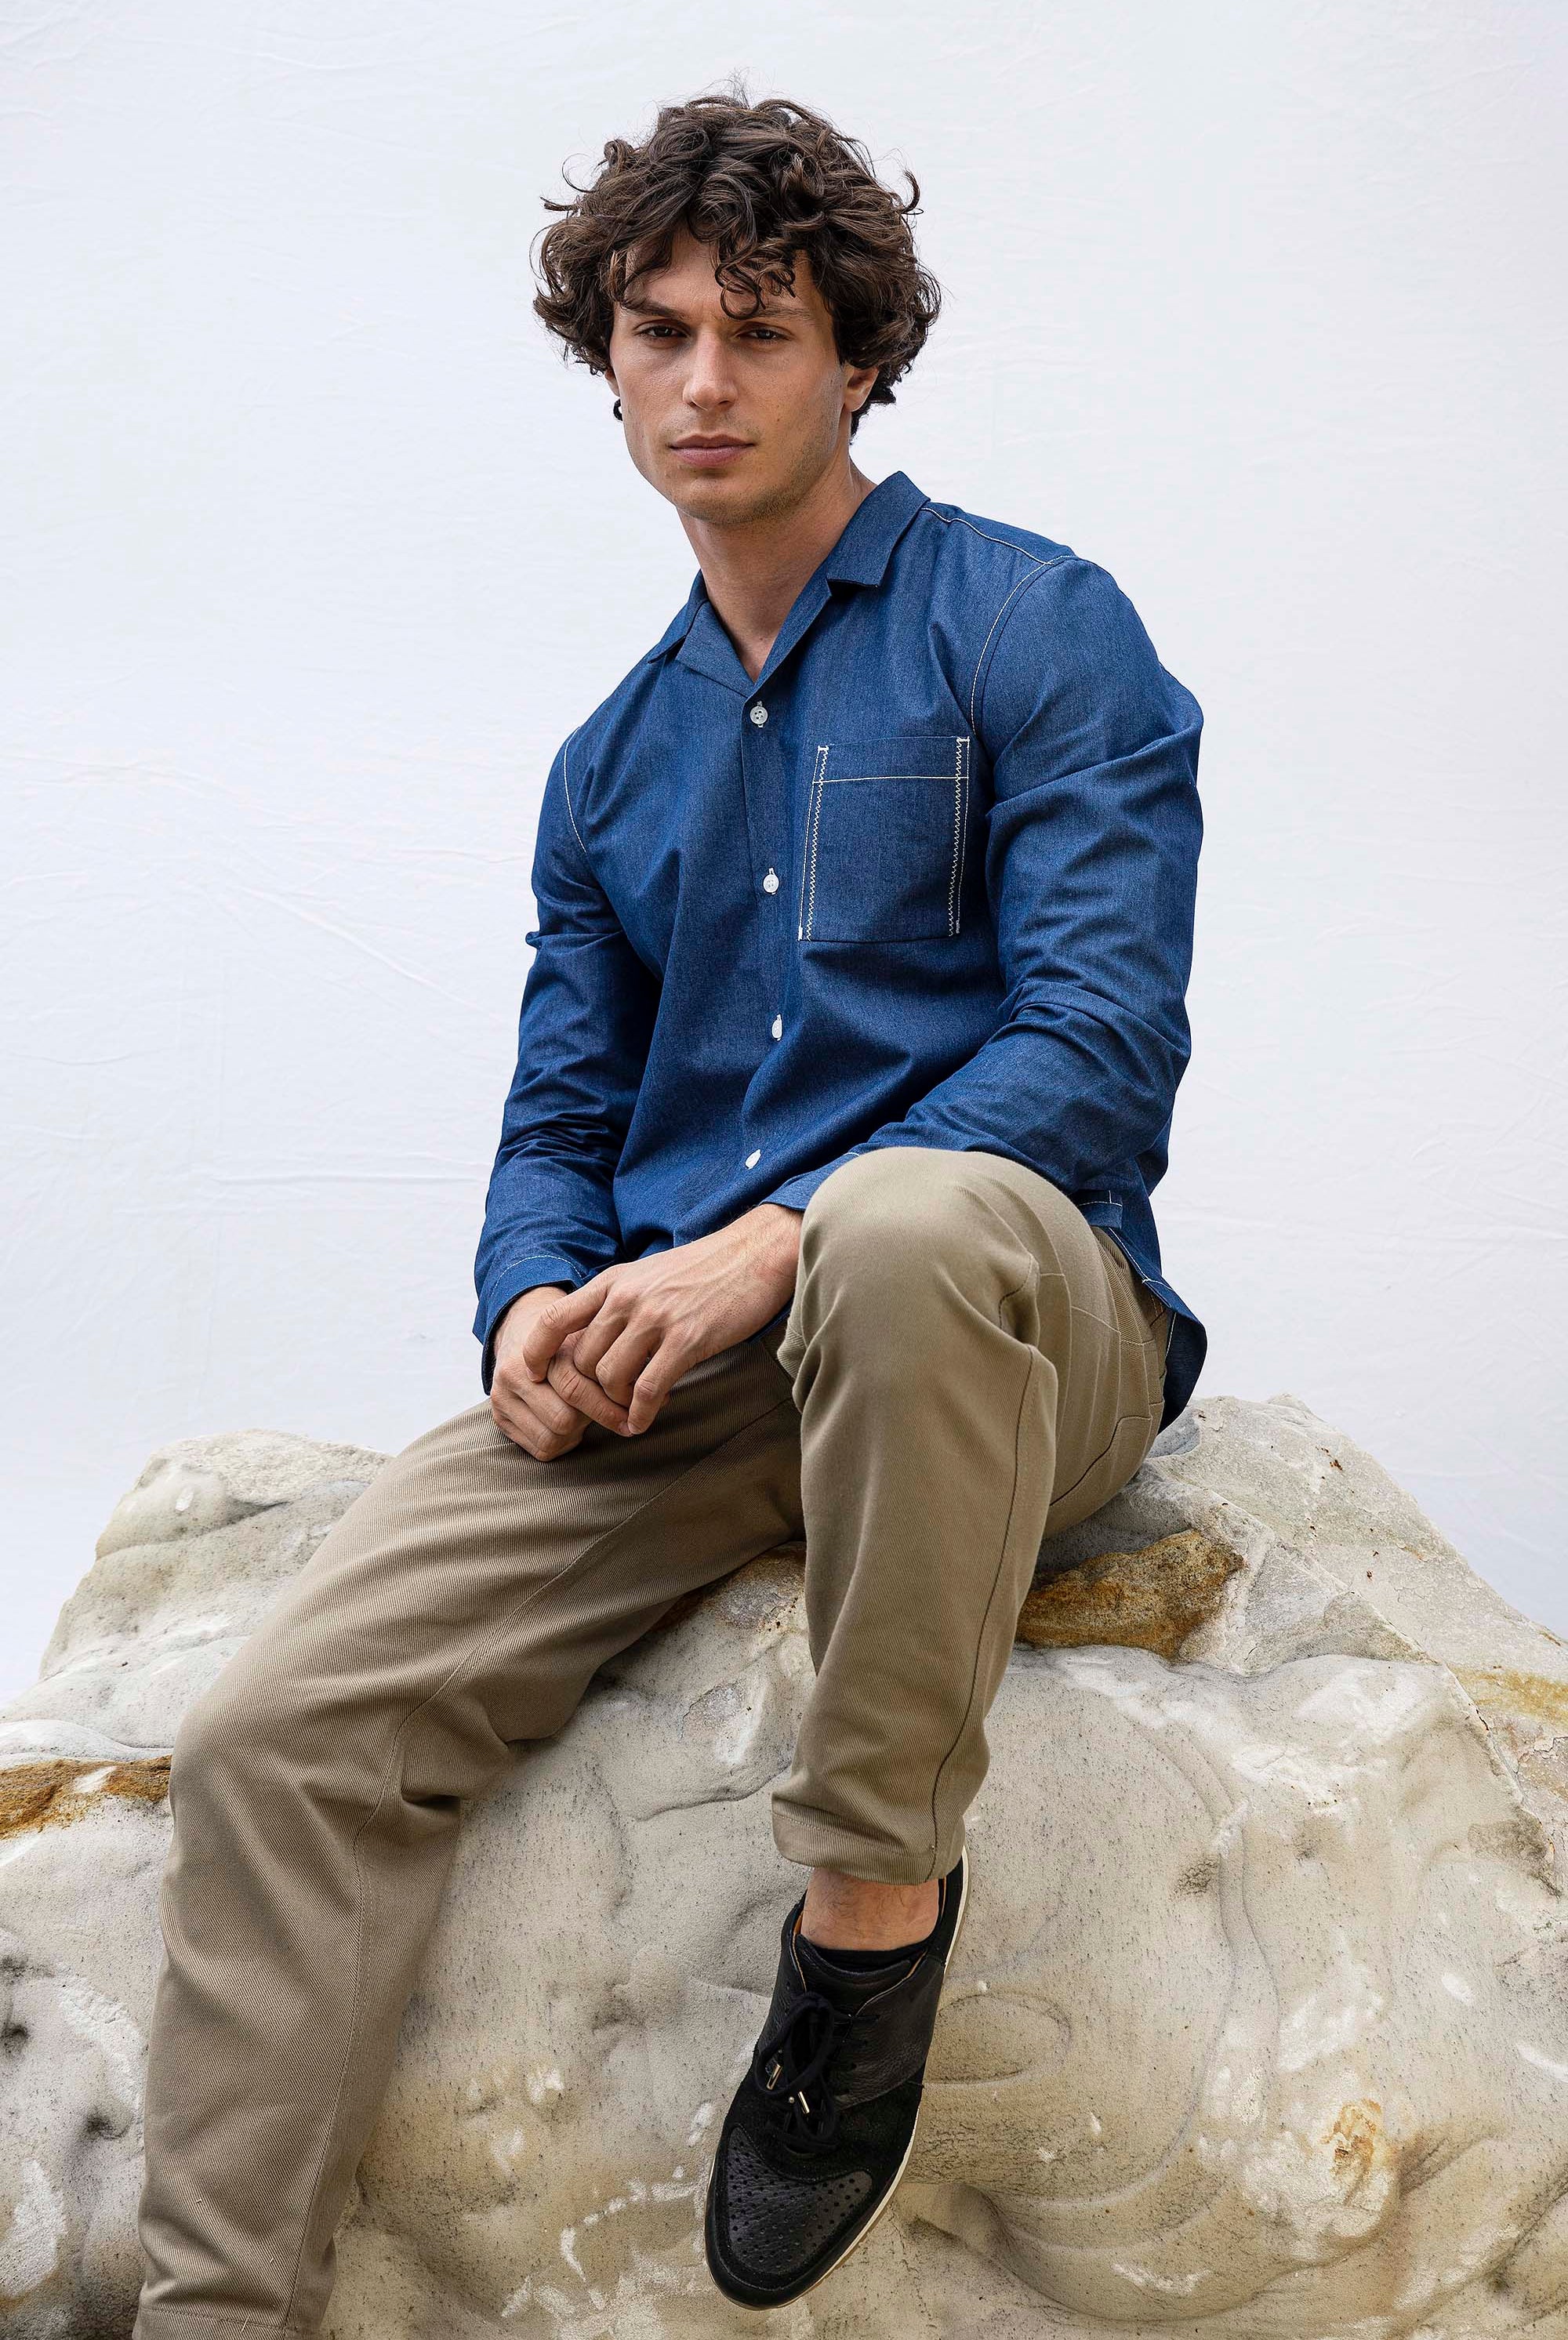 Chemise Guillermo Bleu Denim chemise homme raffinée pour un style charmant